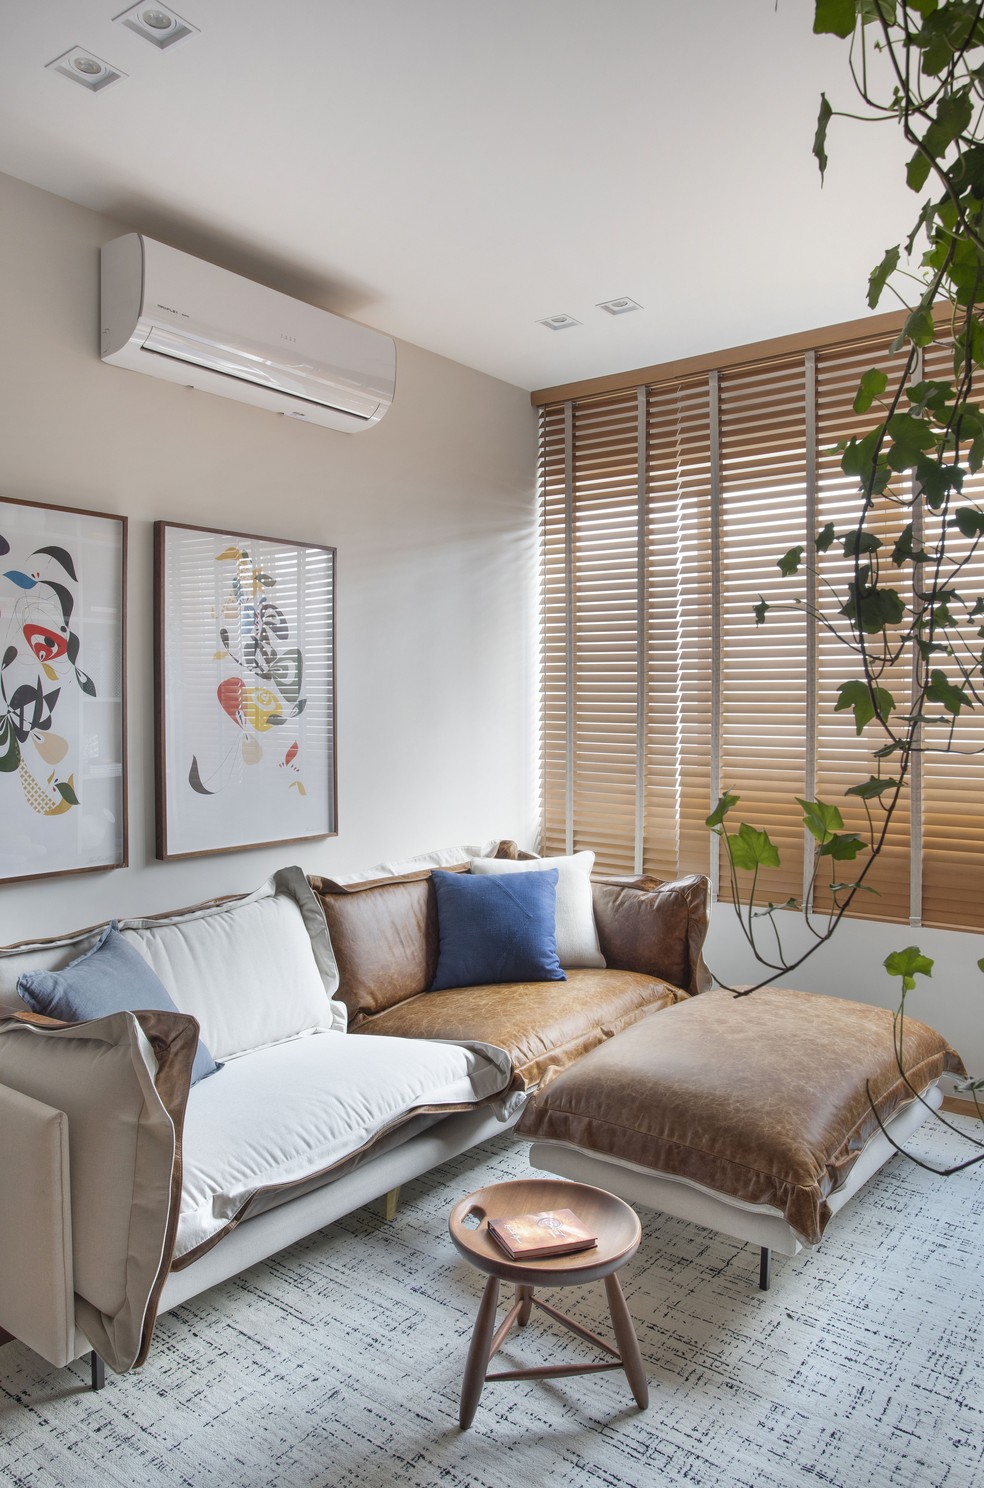 Apartamento de 85 m² se tornou nova morada para mulher que antes vivia em imóvel com mais que o triplo do tamanho — Foto: Juliano Colodeti (MCA Estúdio)